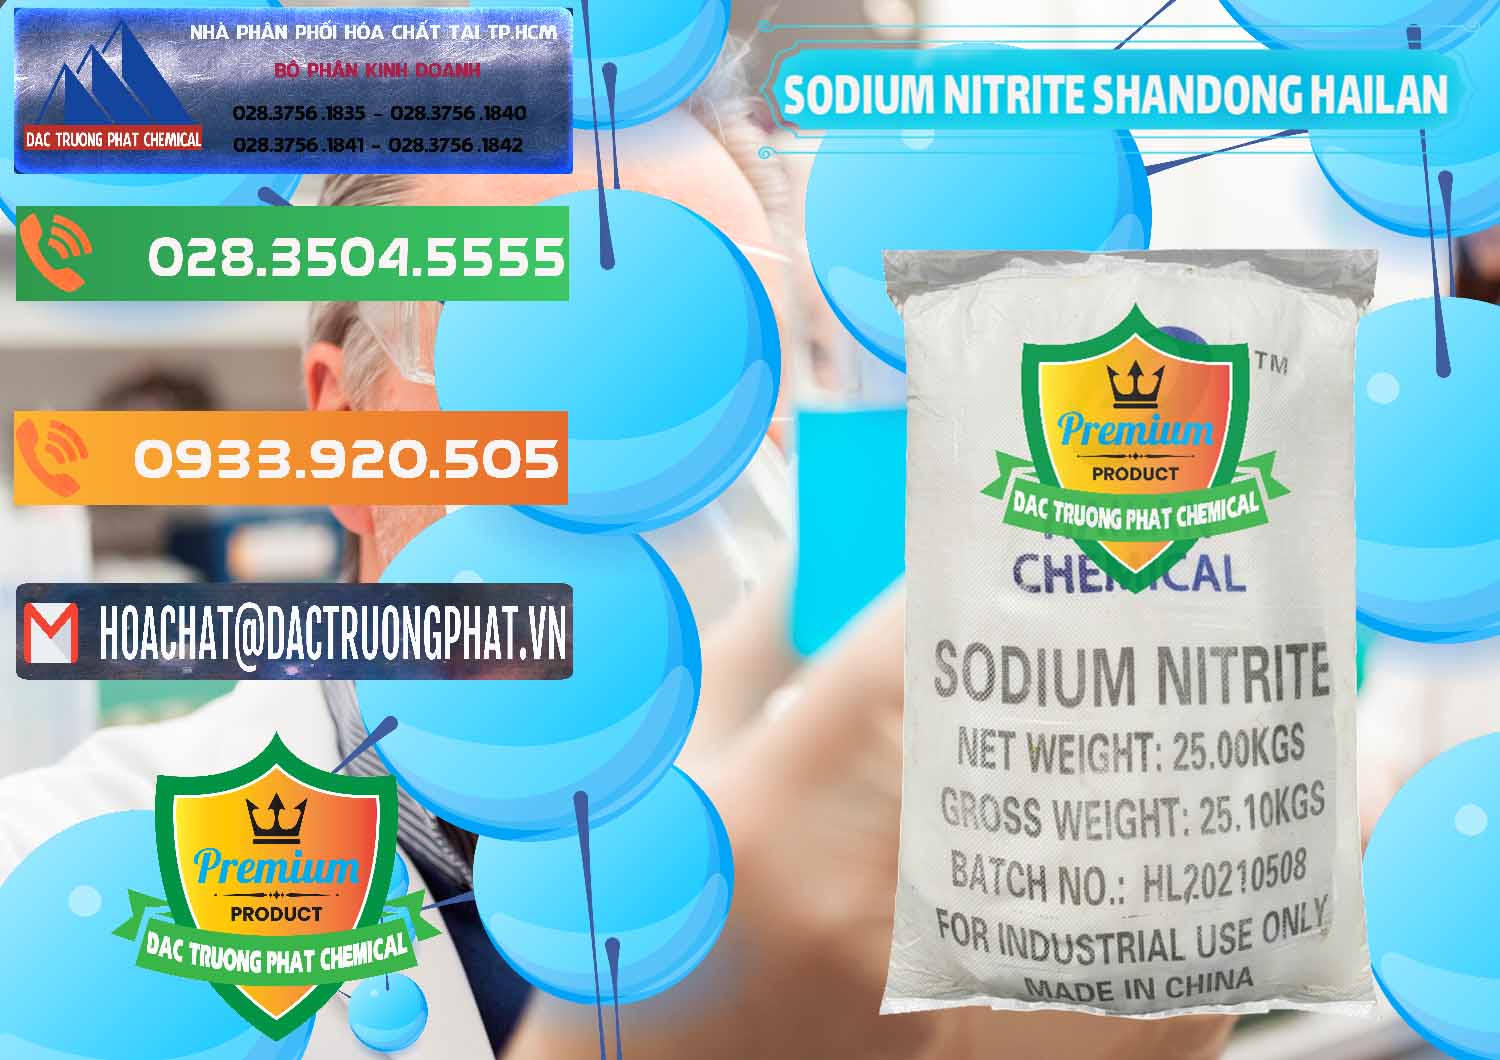 Chuyên cung ứng và bán Sodium Nitrite - NANO2 99.3% Shandong Hailan Trung Quốc China - 0284 - Nơi chuyên kinh doanh & phân phối hóa chất tại TP.HCM - hoachatxulynuoc.com.vn